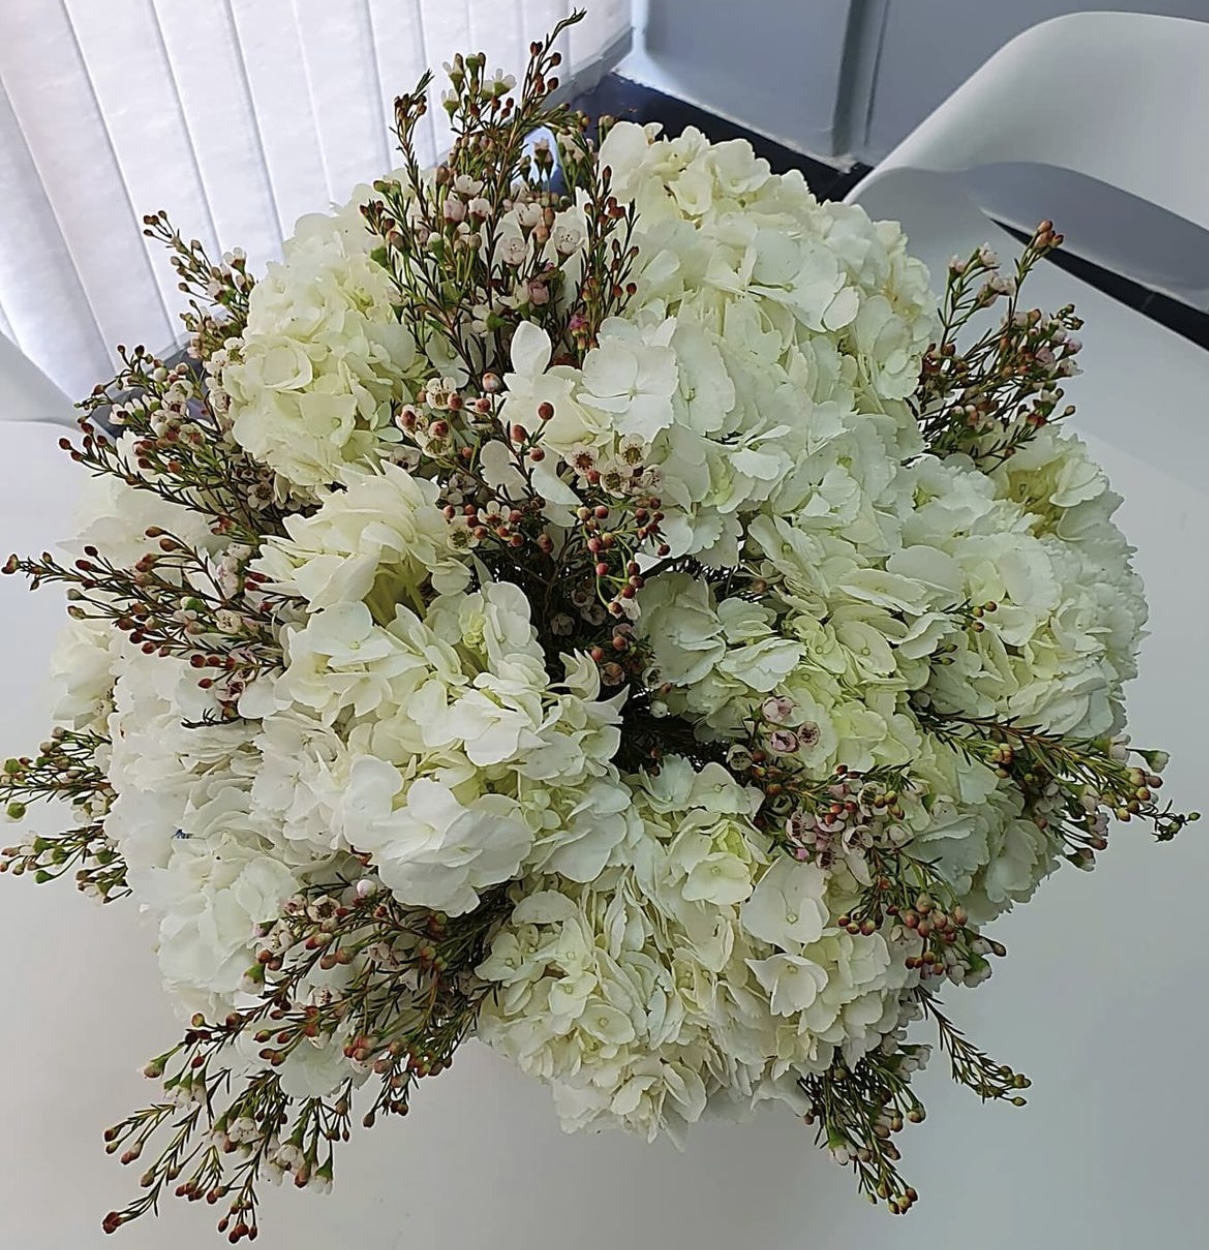 10 Hyderangea white, wax white 10 pcs with vase